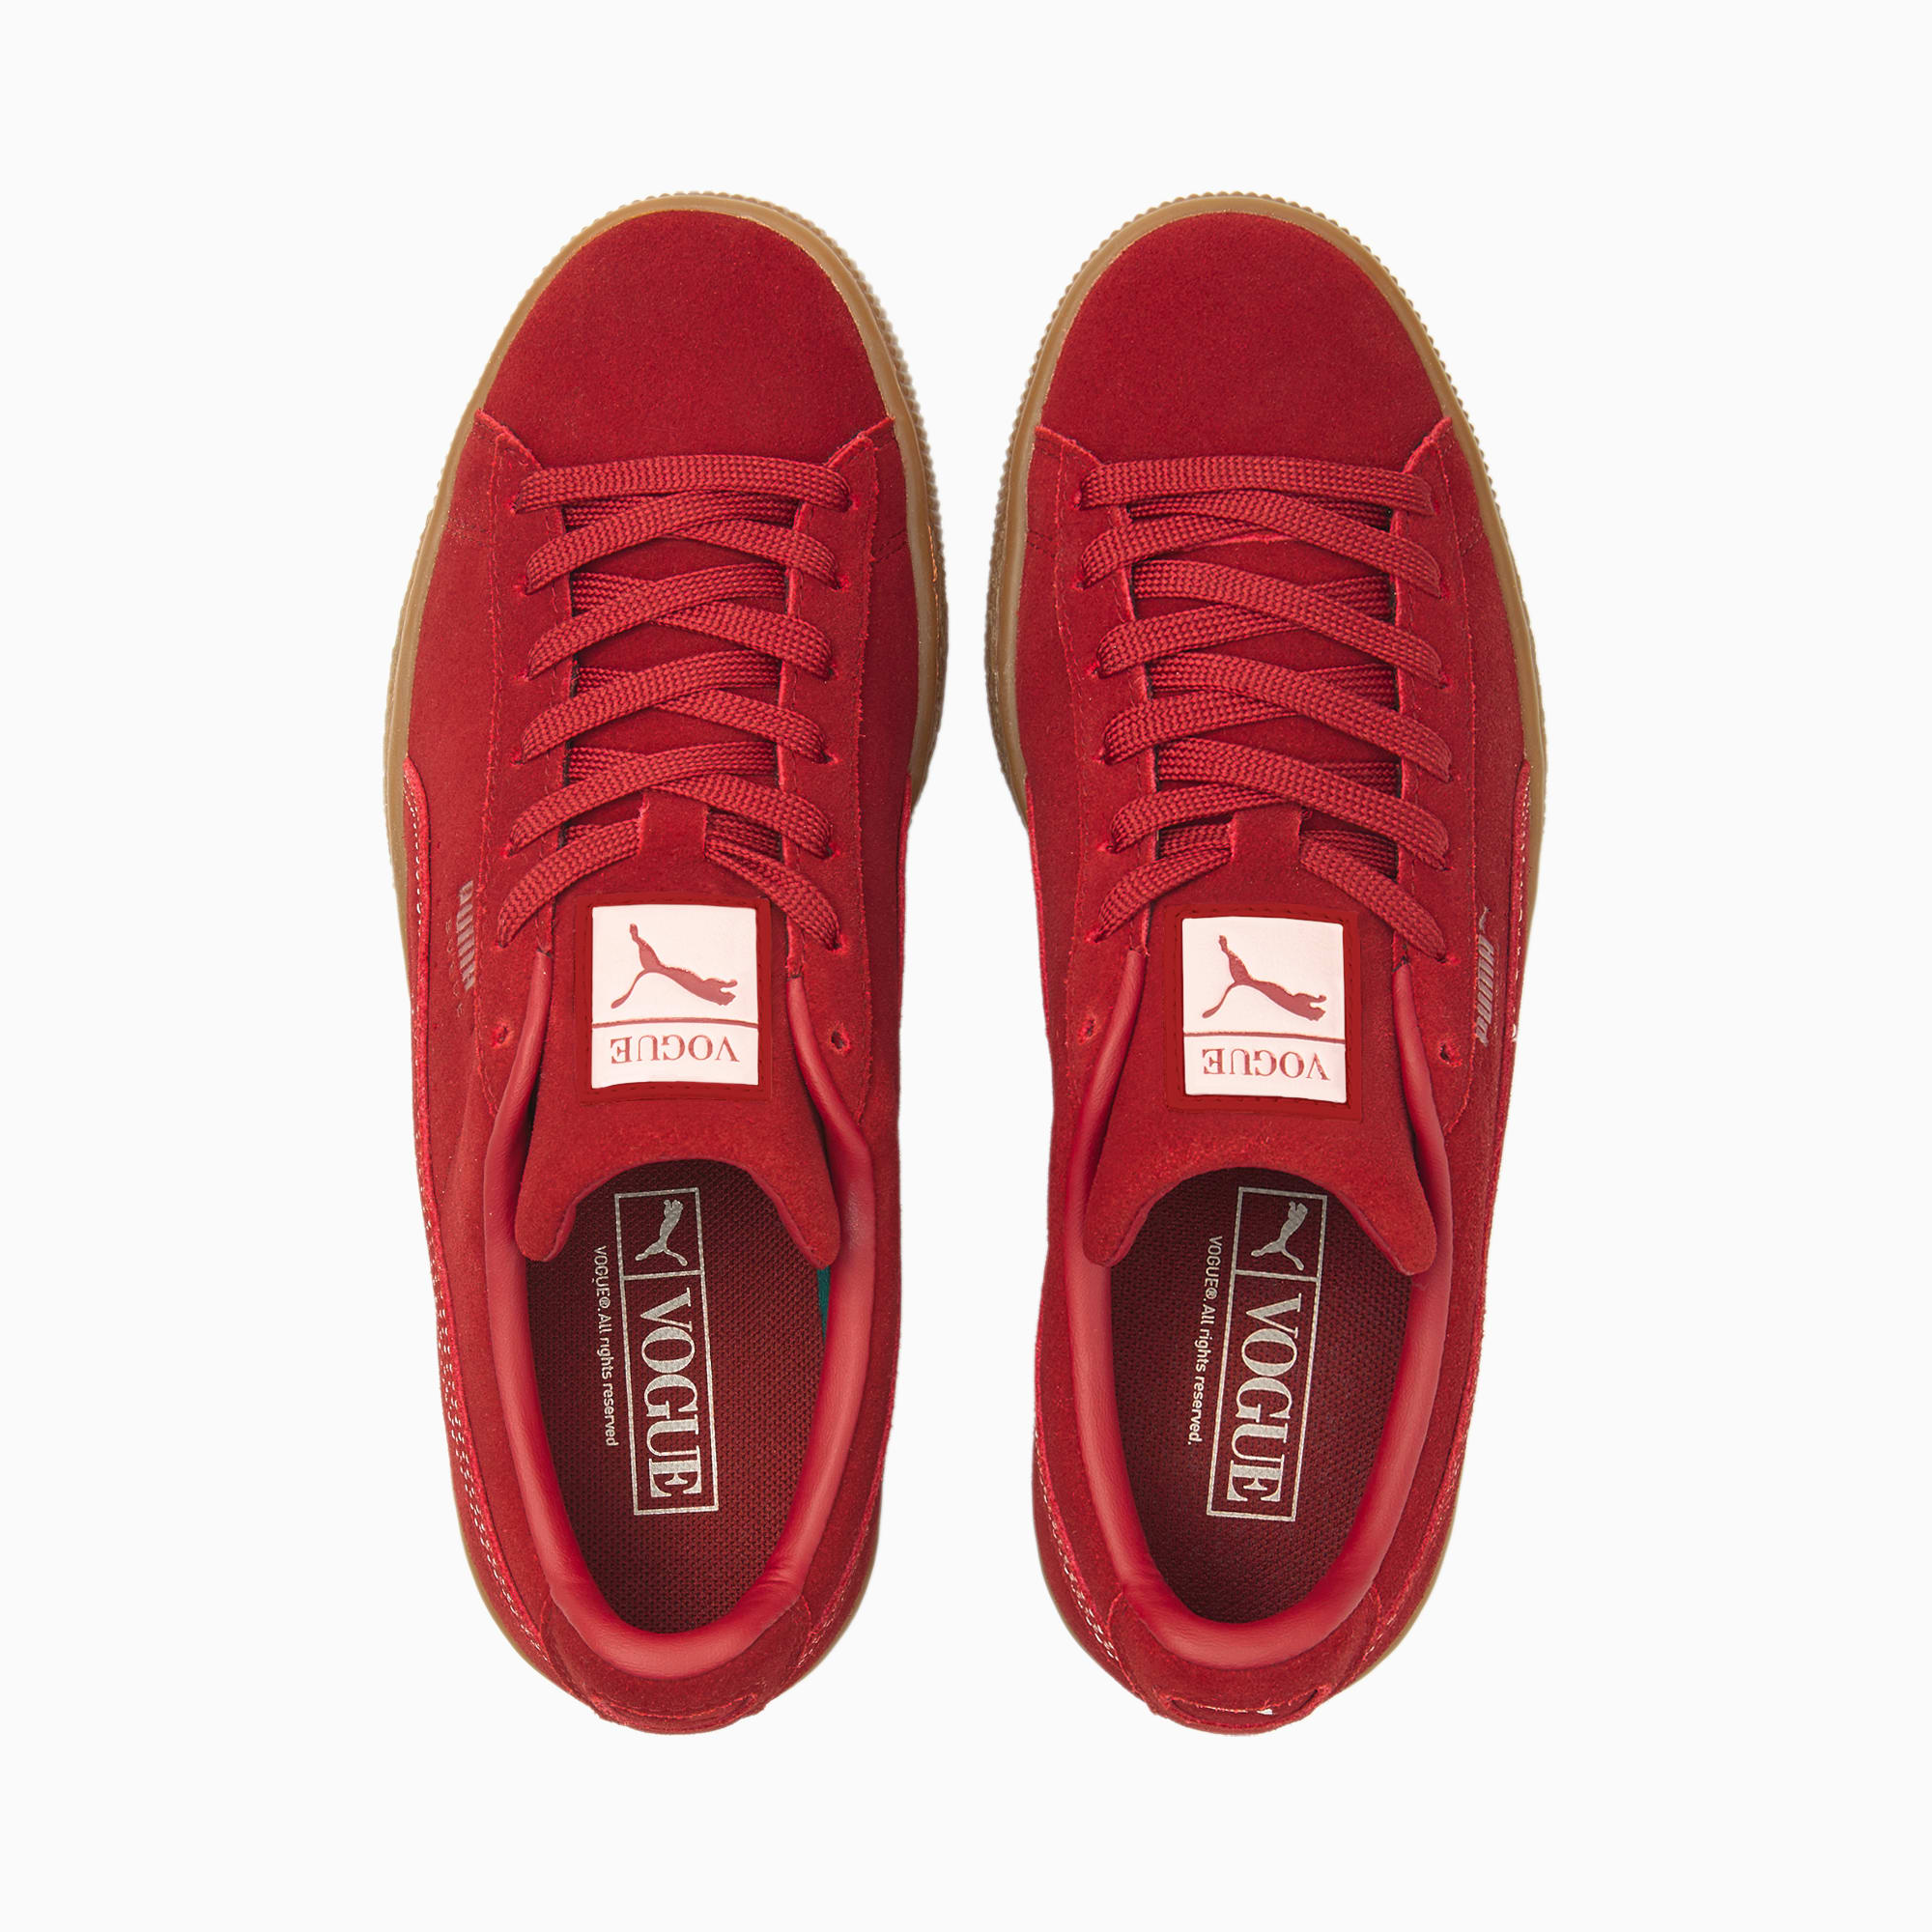 x VOGUE Suede Classic Women | Intense Red-Intense Red | PUMA Footwear | PUMA